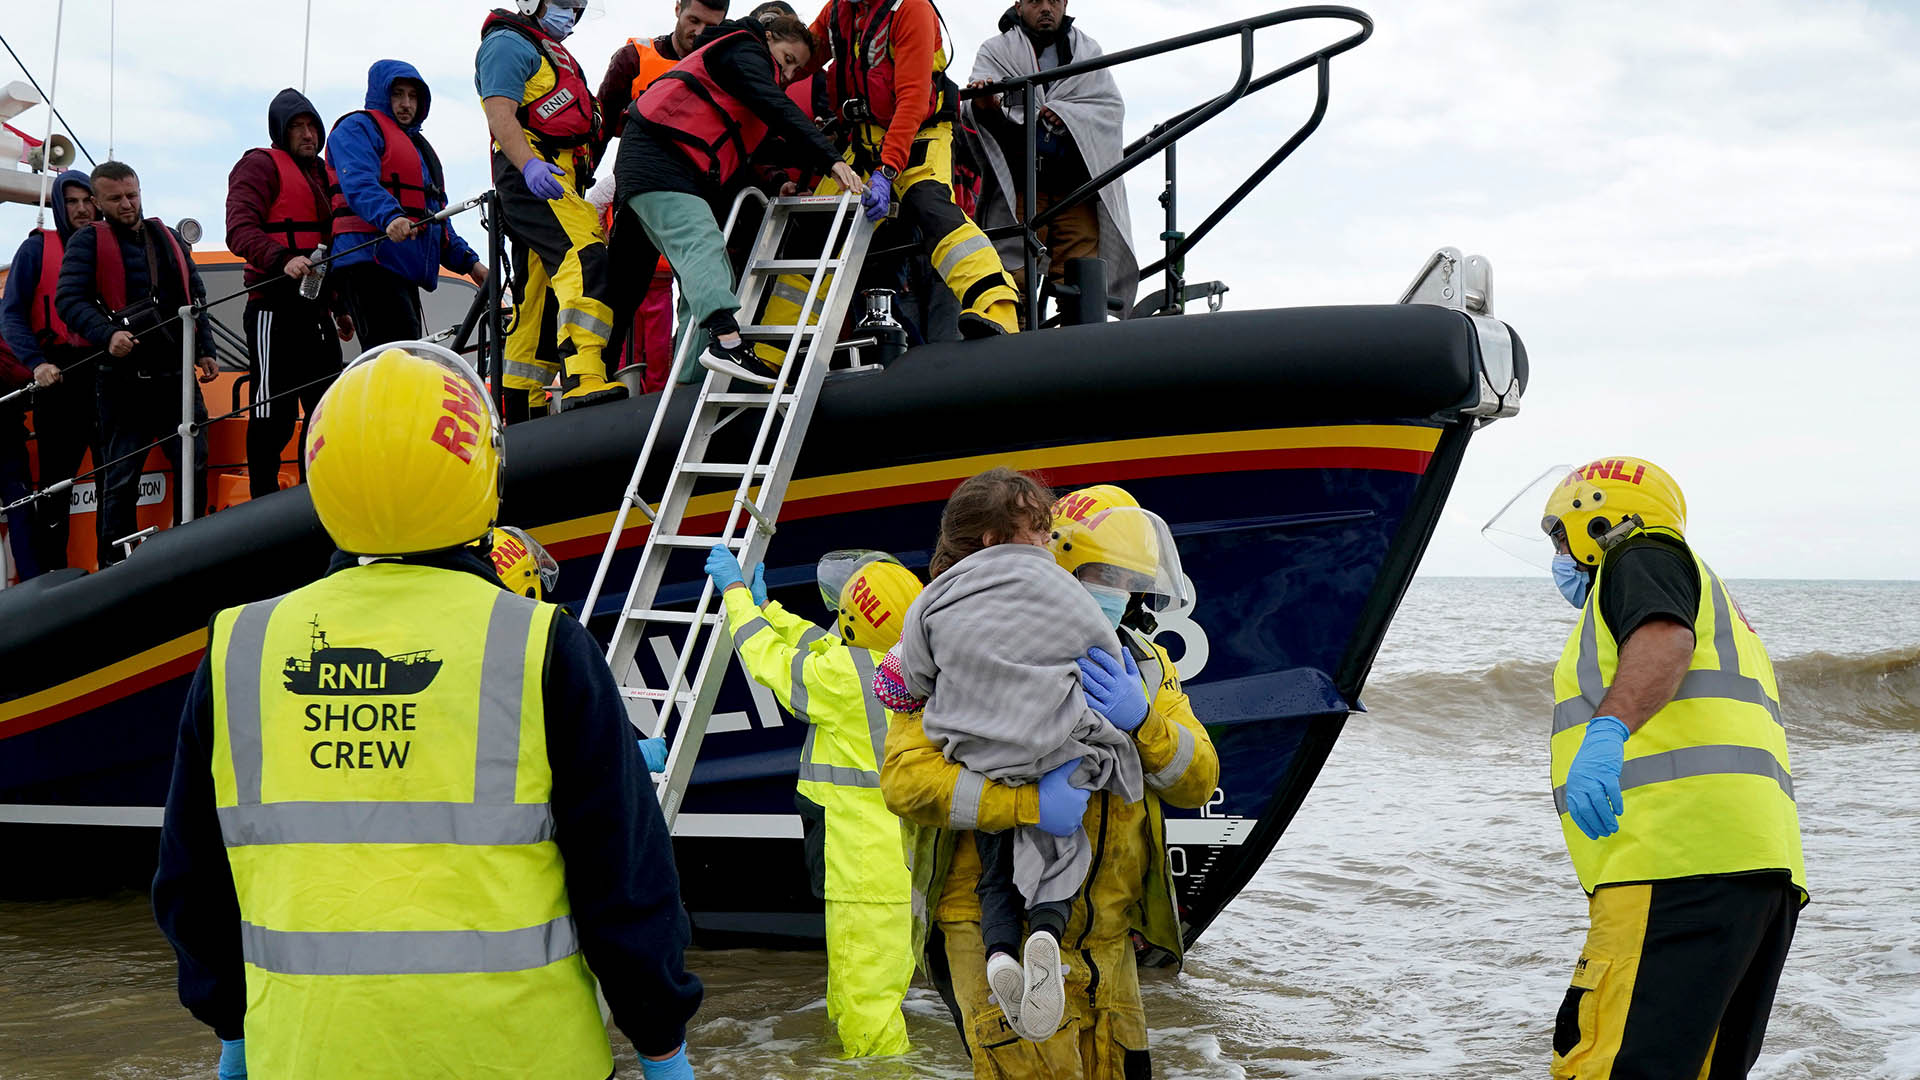 Ein junges Mädchen wird ans Ufer getragen, während eine Gruppe von Menschen, bei denen es sich vermutlich um Migranten handelt, nach Dungeness gebracht wird. | dpa